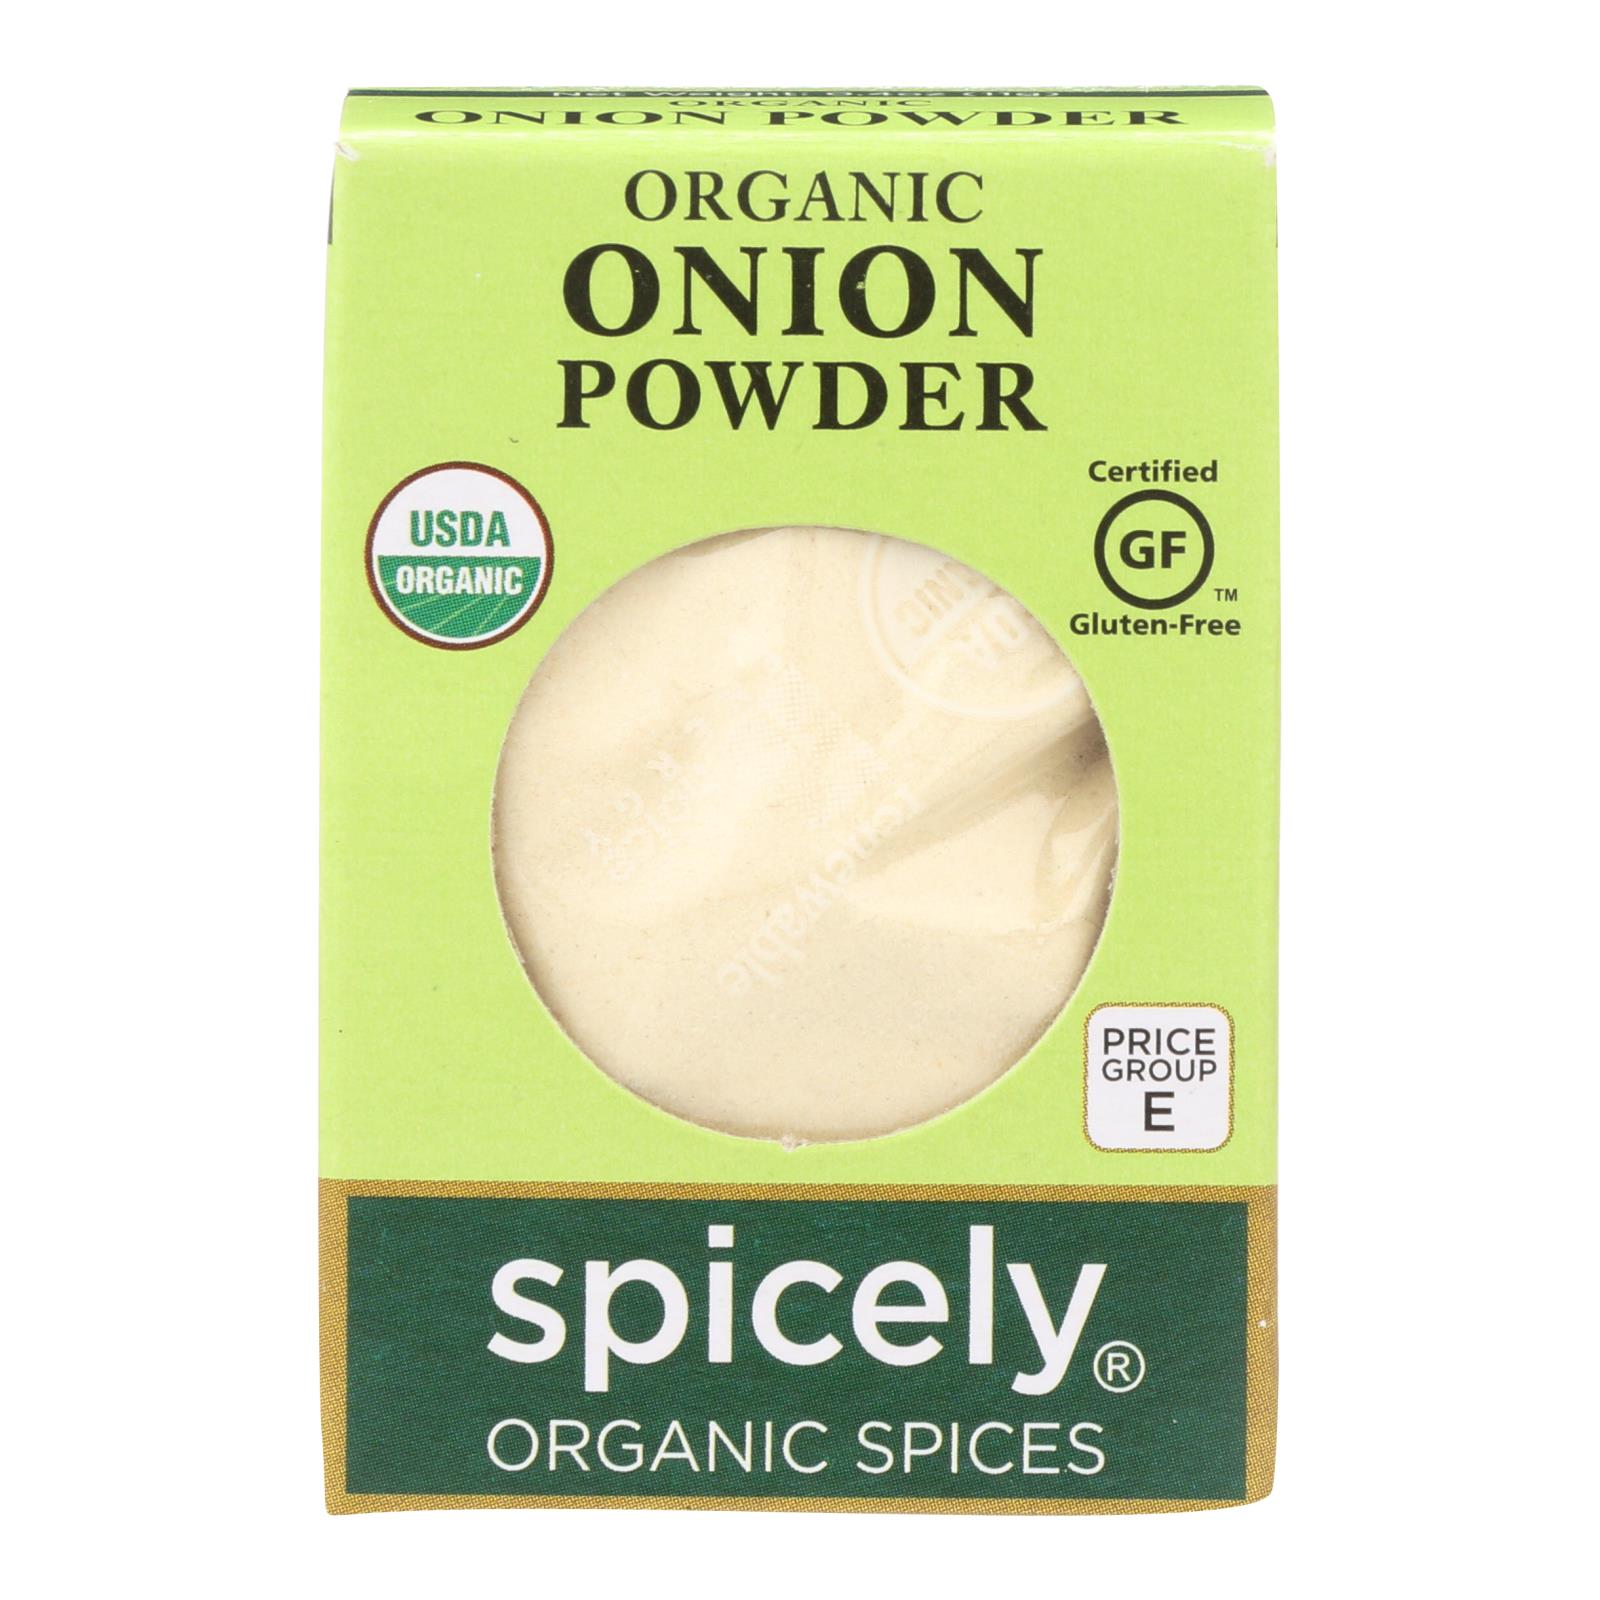 Spicely Organics - Organic Onion Powder - 6개 묶음상품 - 0.4 oz.